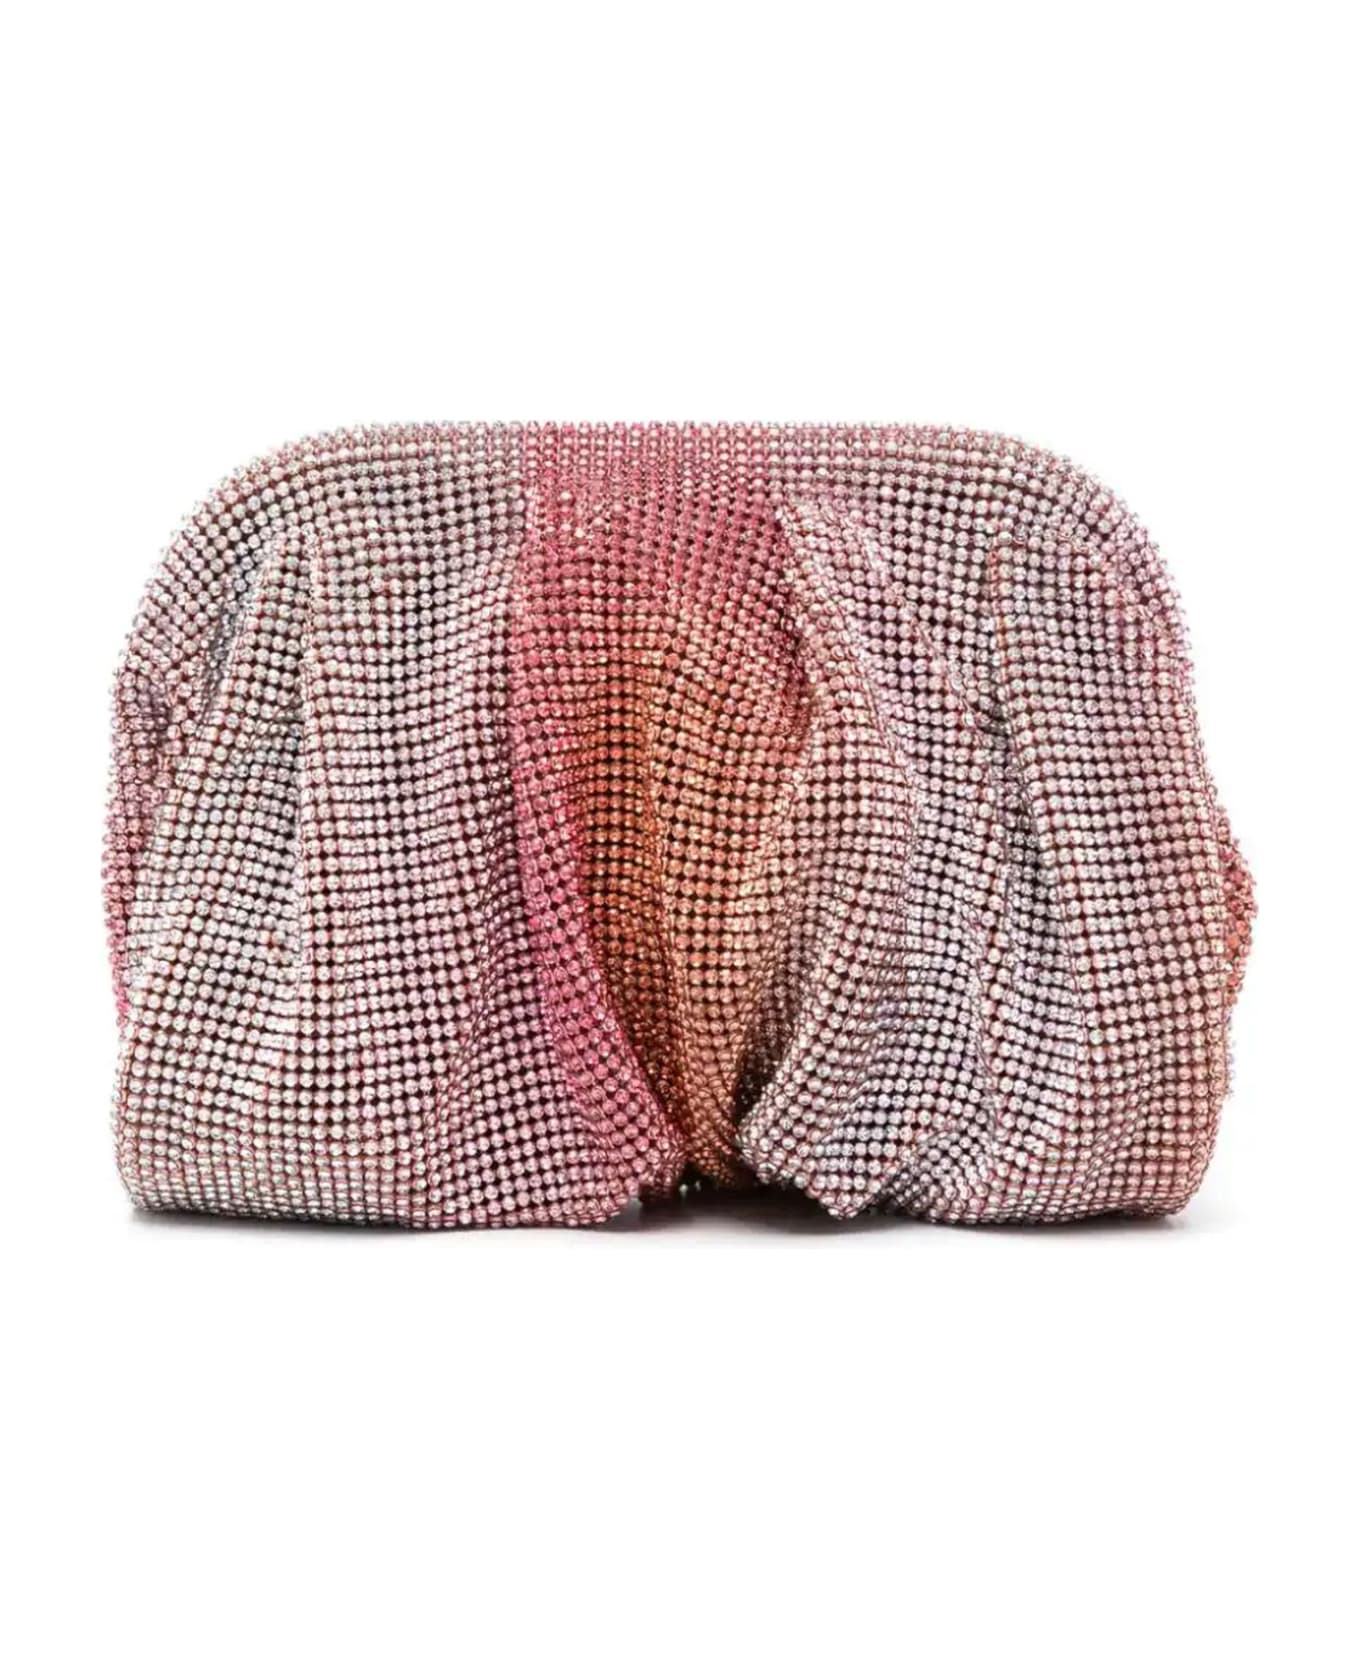 Benedetta Bruzziches Raspberry Pink Venus Petite Crystal Clutch Bag - Pink